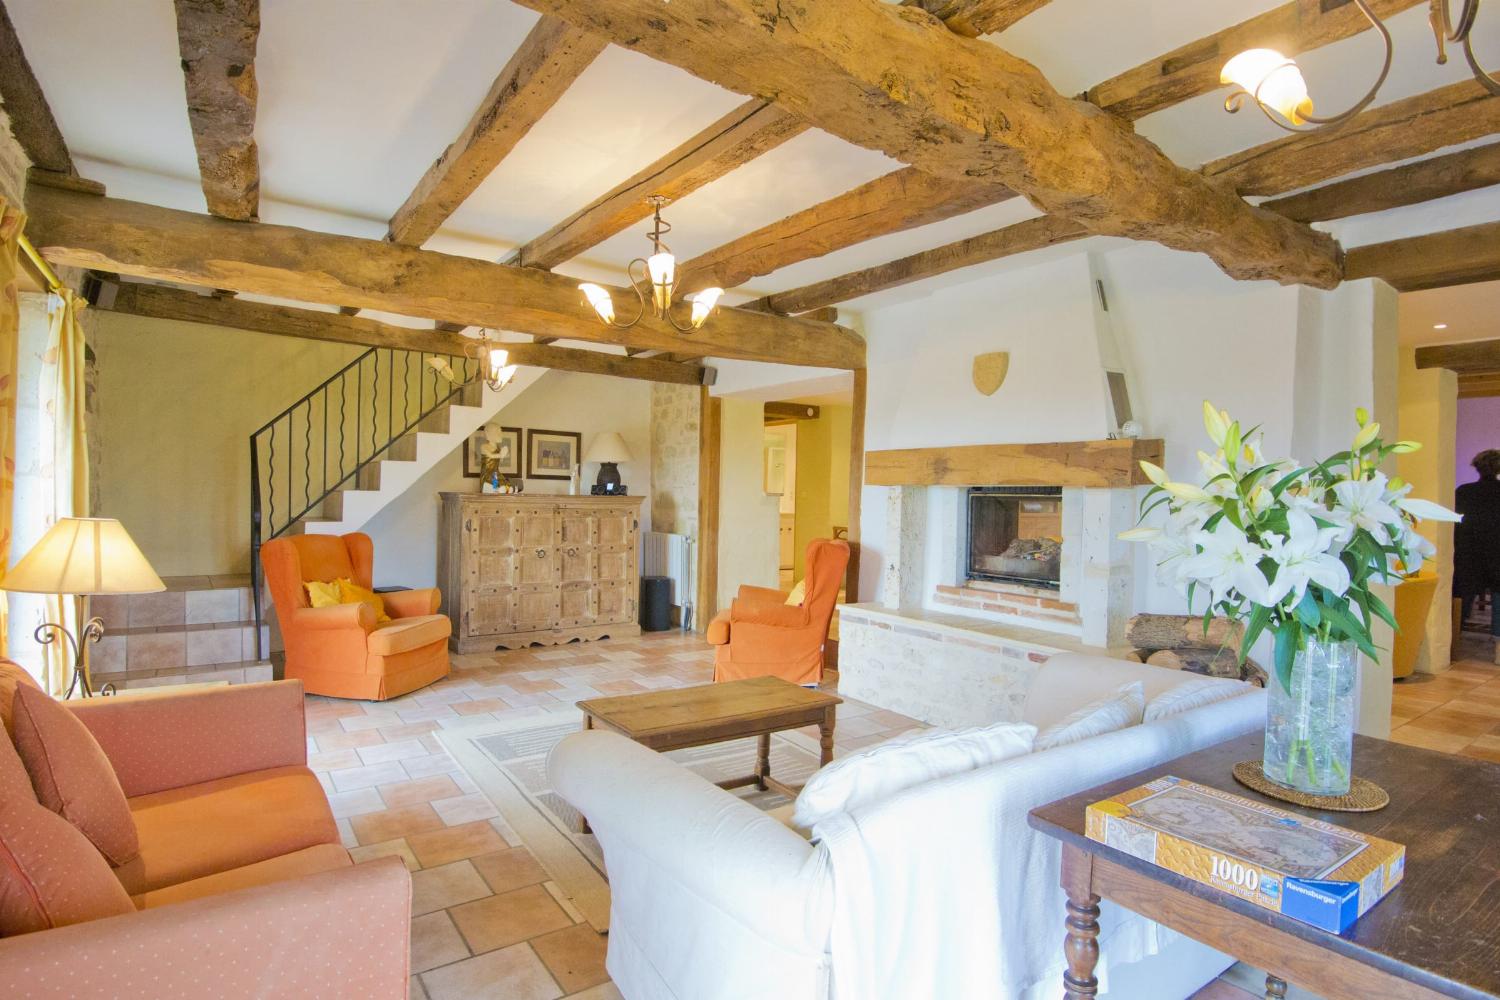 Living room | Rental home in Tarn-en-Garonne